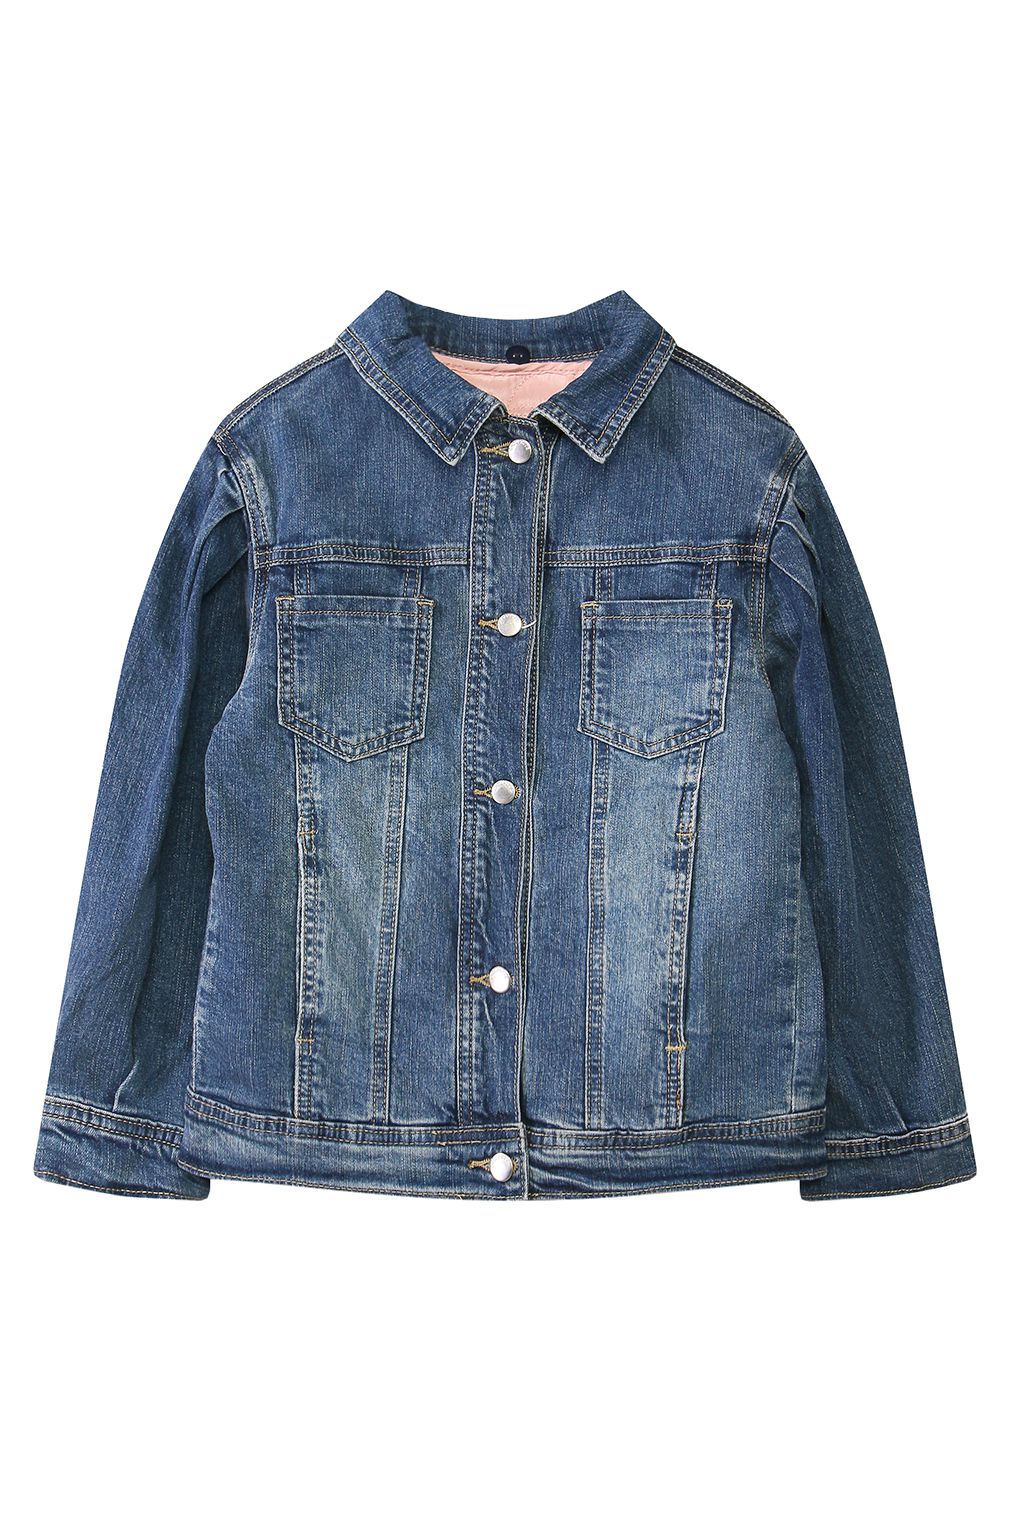 Куртка джинсовая детская Choupette 03.98, голубой, 128